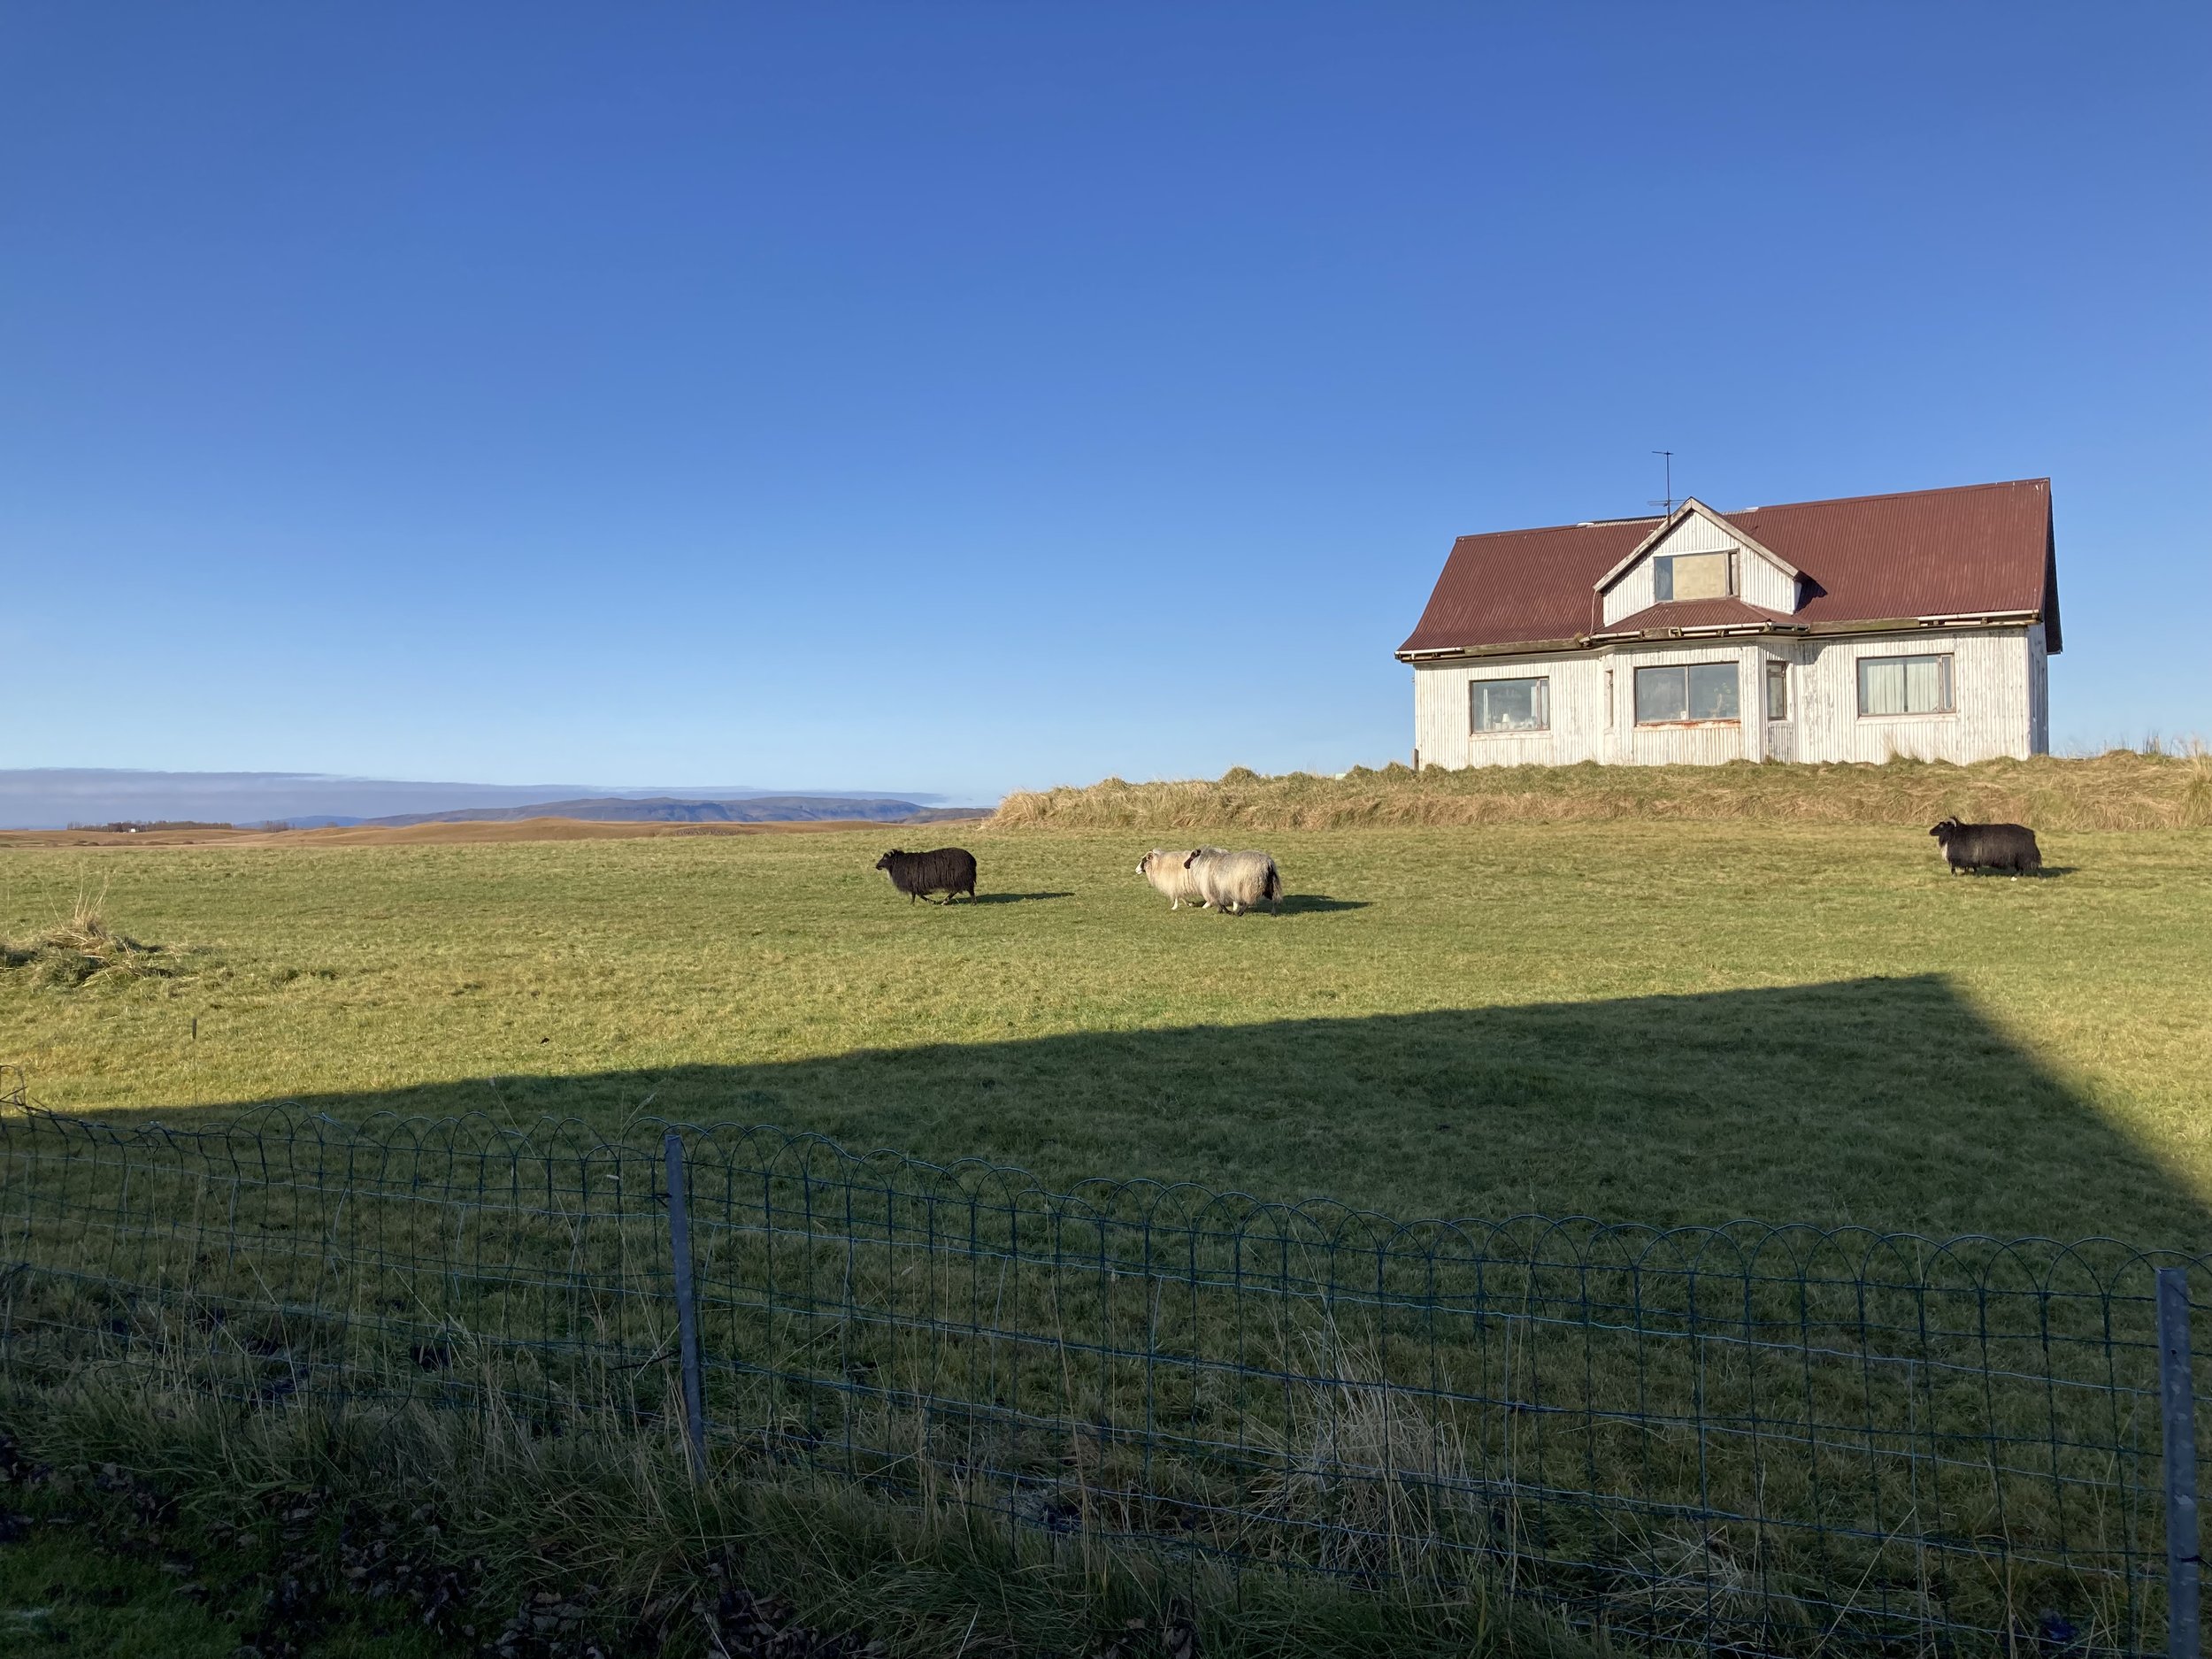 A friend's farm, west of Selfoss.